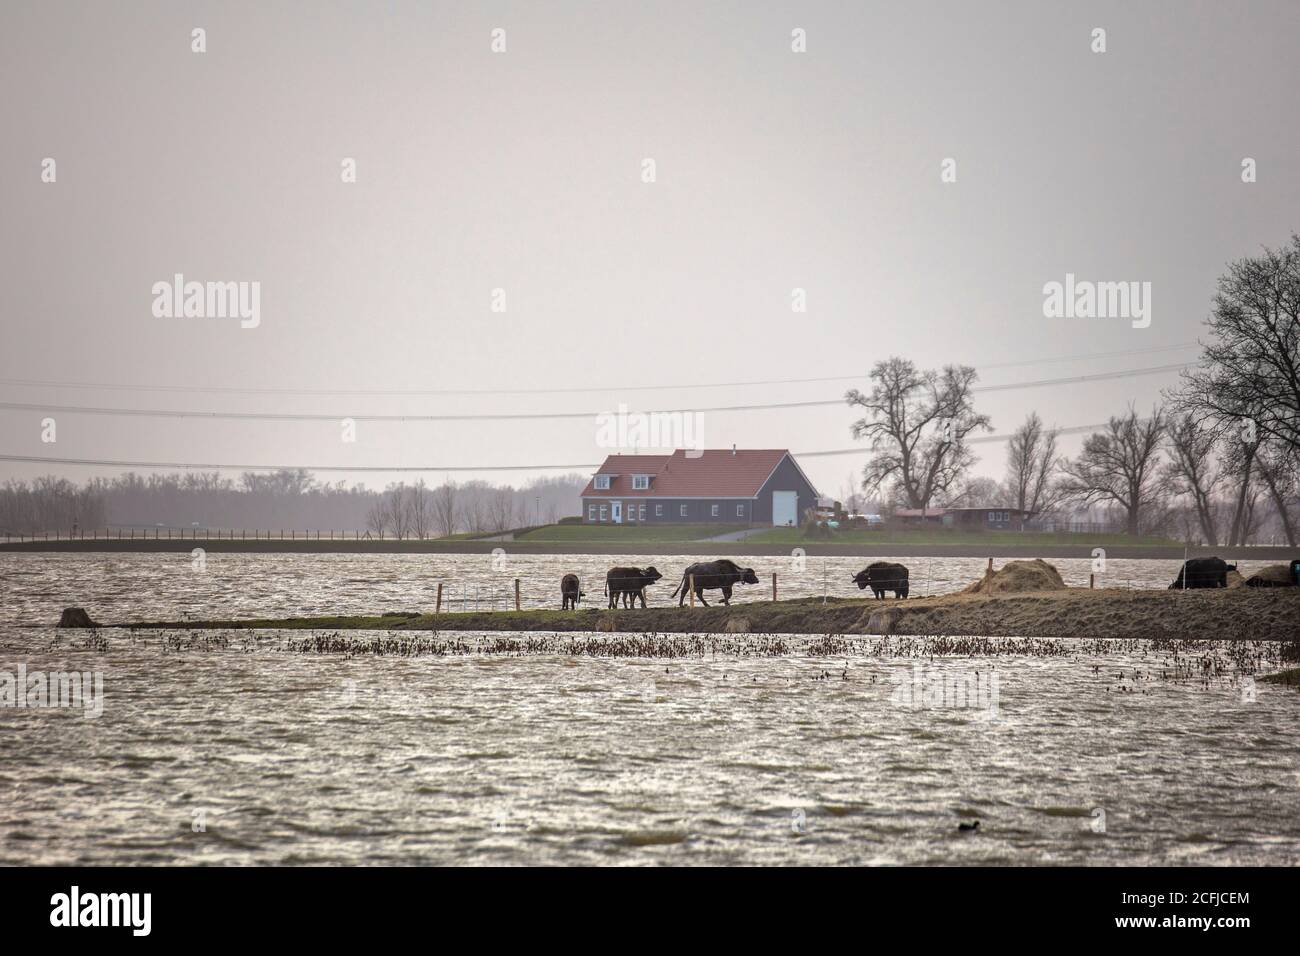 Niederlande, Werkendam, Nationalpark De Biesbosch. Absichtliche Überschwemmung des Polders Noordwaard. Raum für das River-Projekt. Isolierte Farm. Wate Stockfoto